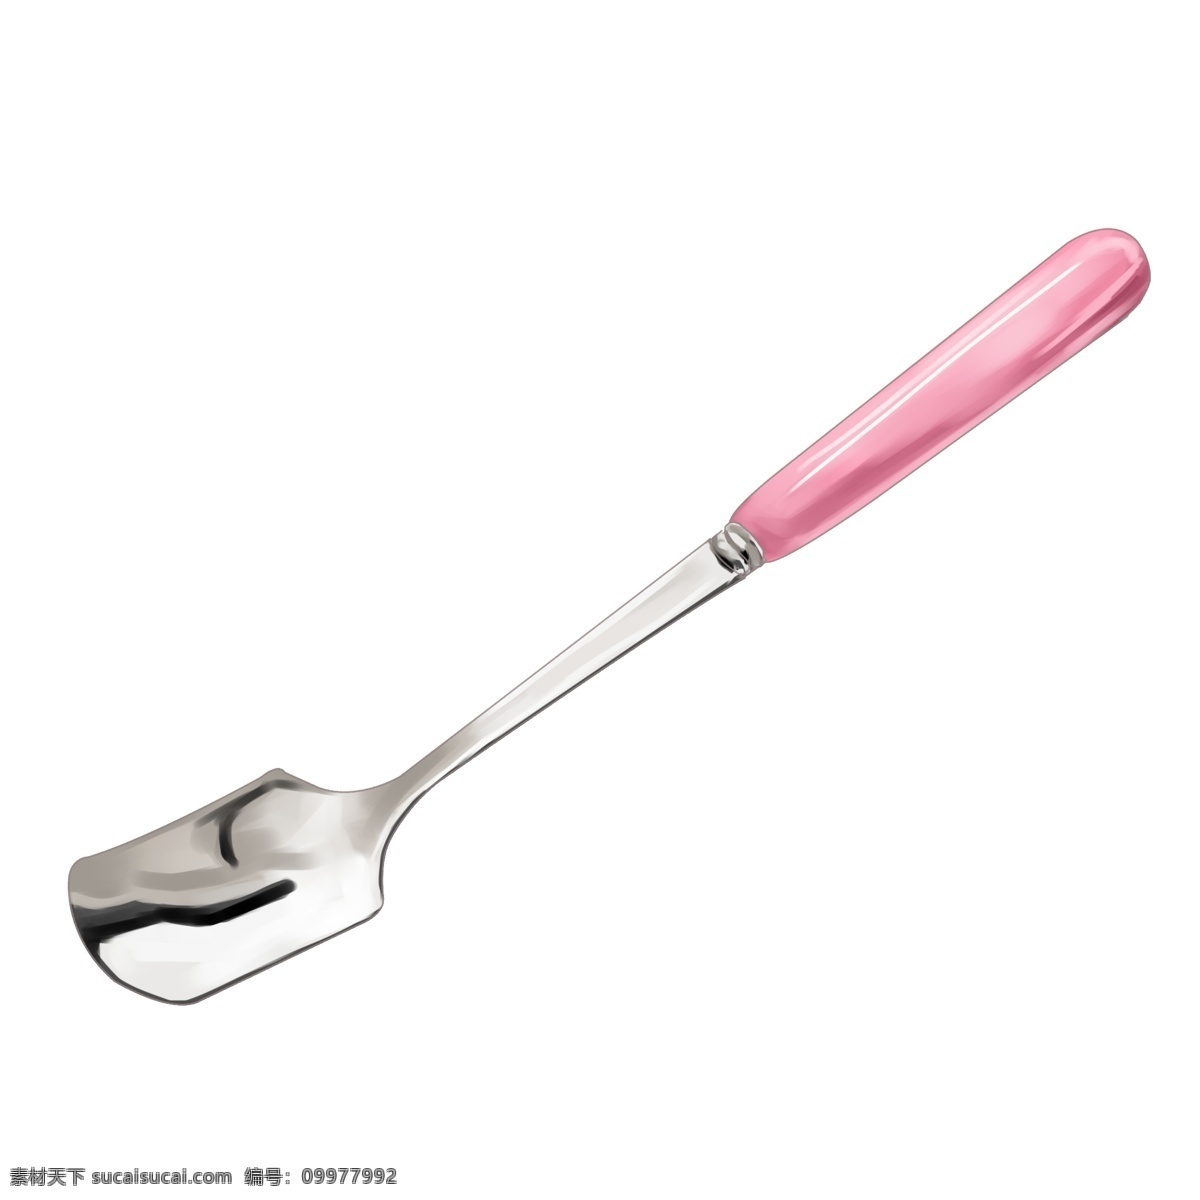 粉色 几何形 金属 汤勺 插图 勺子 金属勺子 仿真 光滑 餐具用品 实物 餐具 简约 饭勺